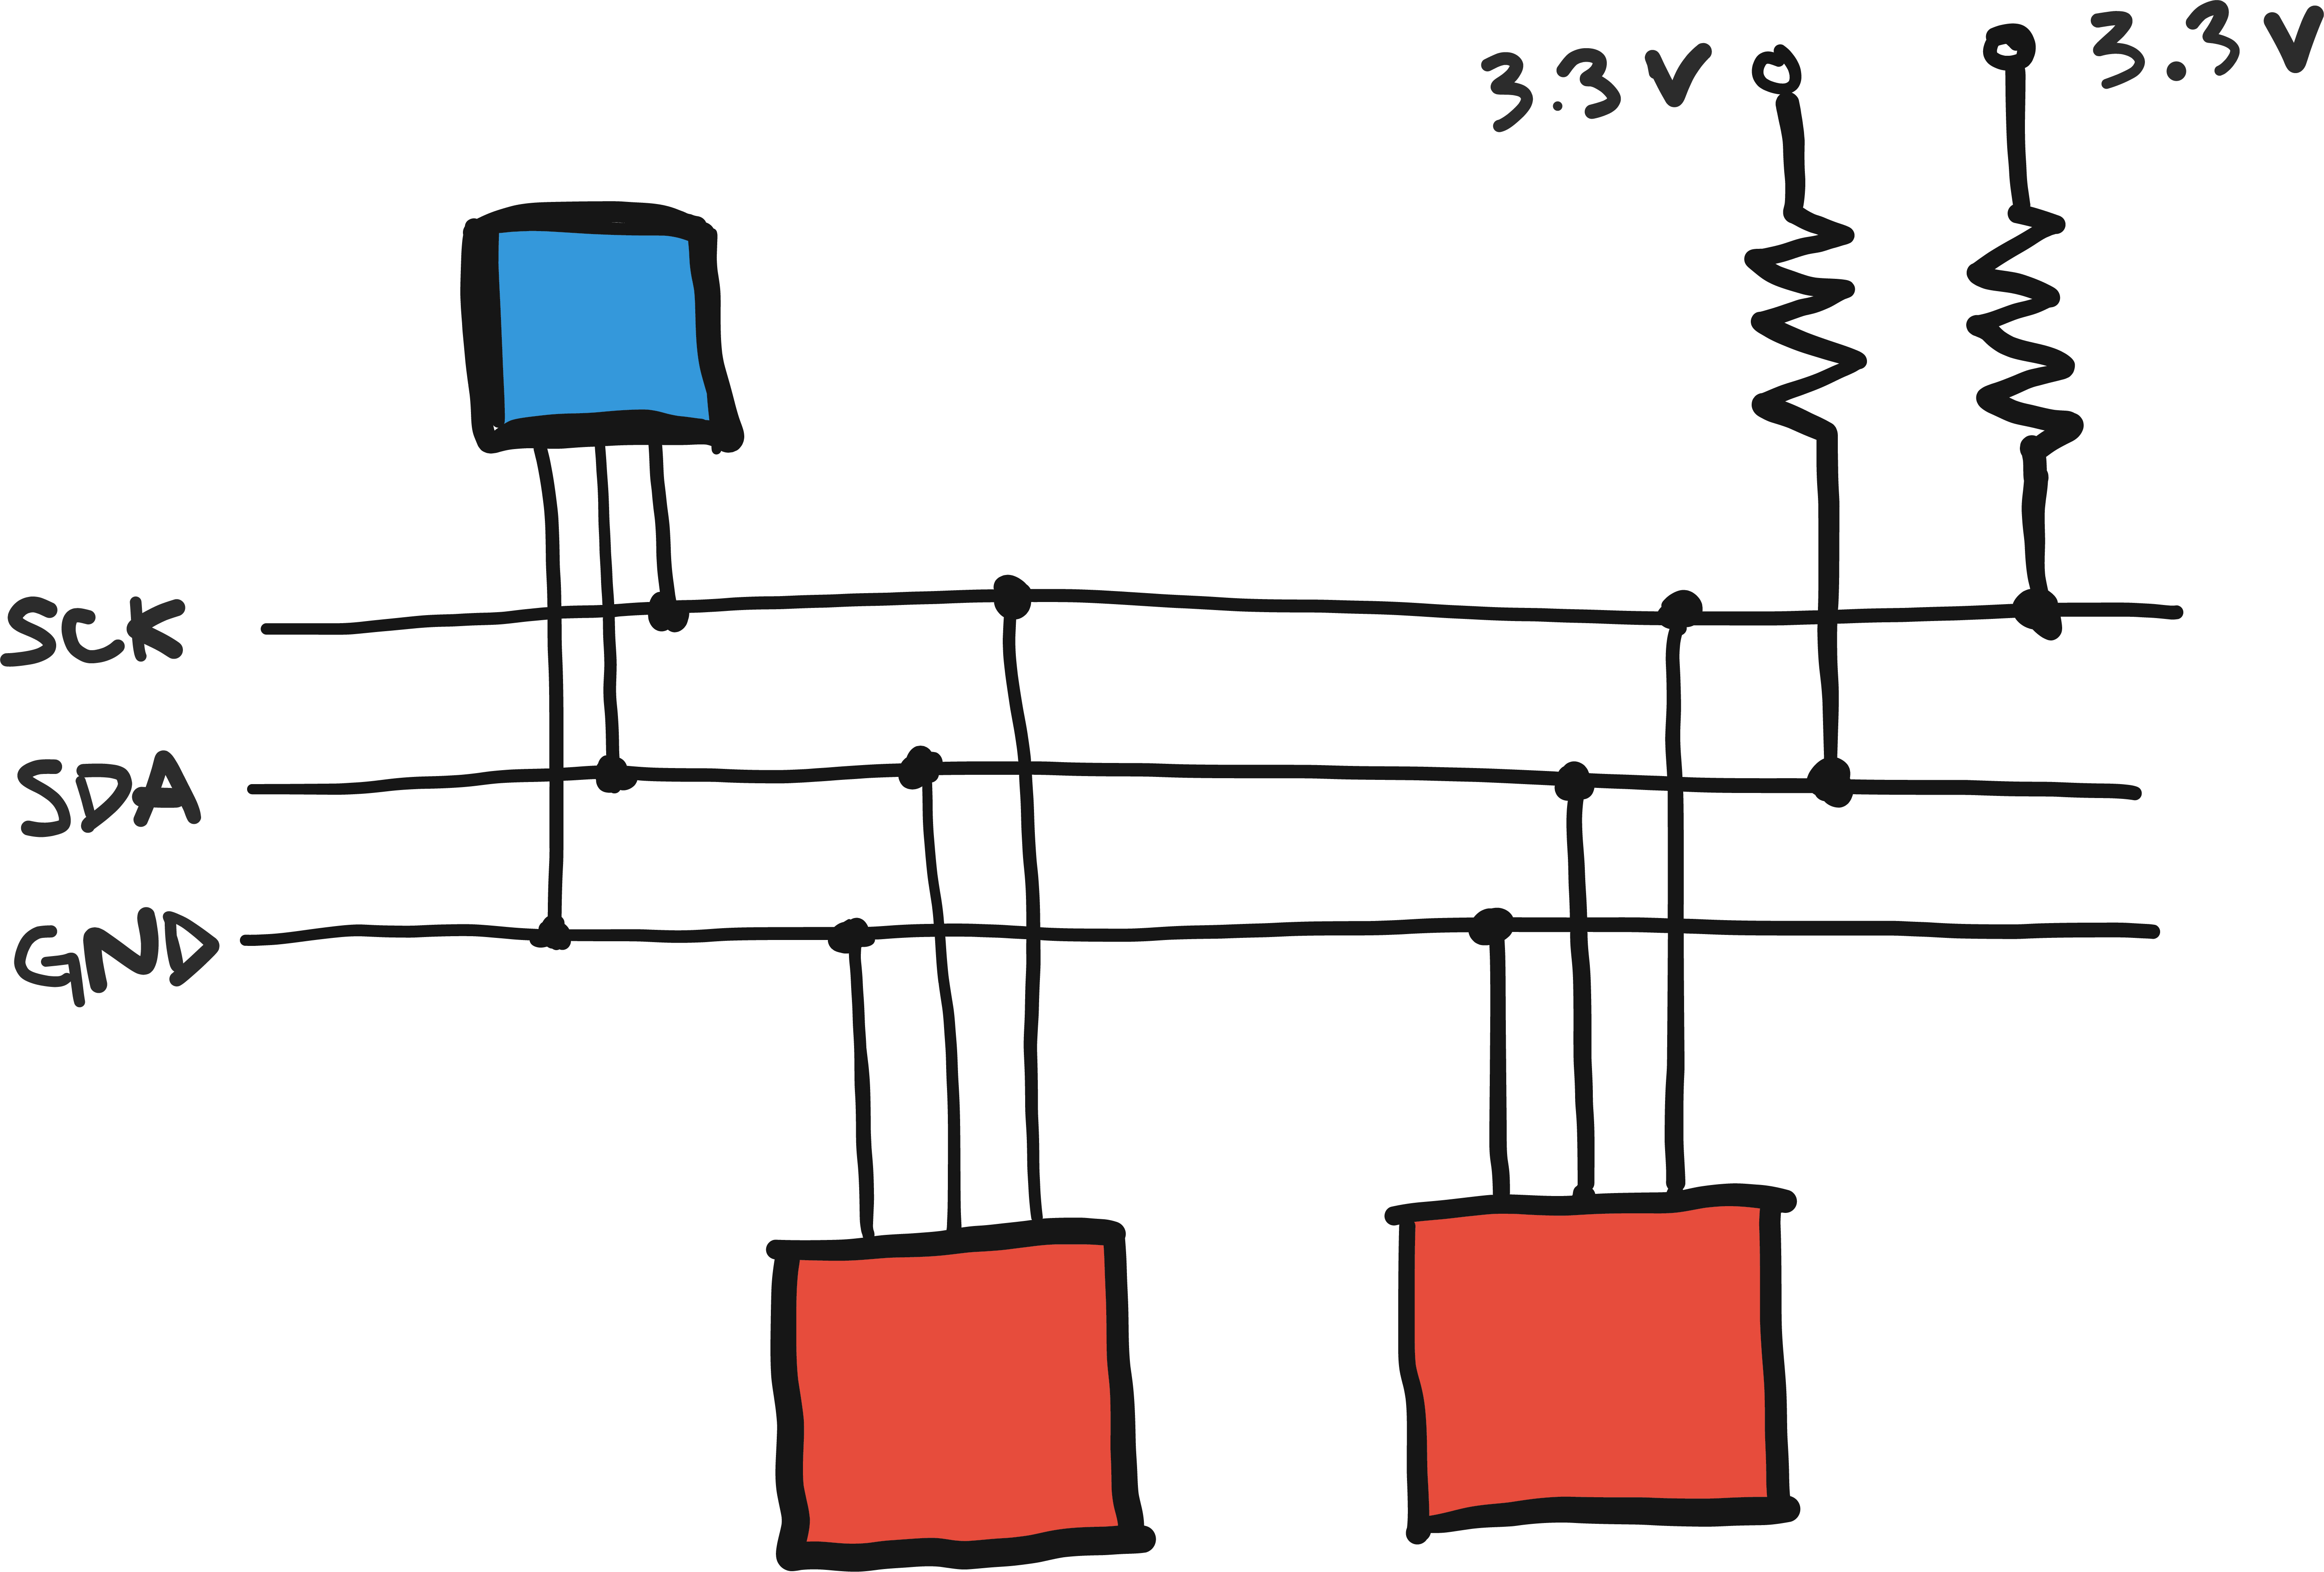 I2C schematic